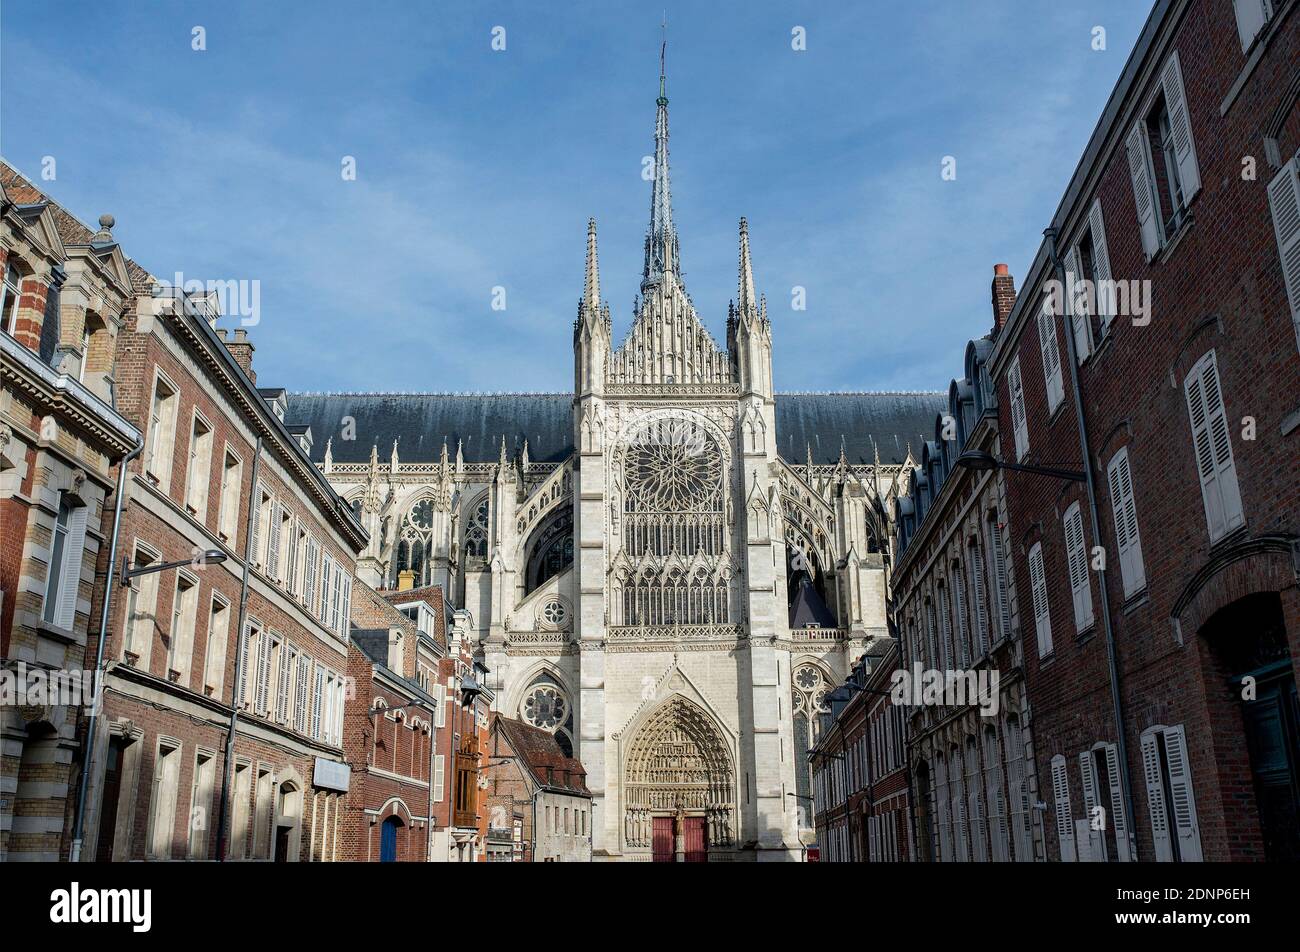 Amiens (Nordfrankreich): Überblick über die Kathedrale Basilika unserer Lieben Frau von Amiens, registriert als UNESCO-Weltkulturerbe, mit Häusern in der Cit Stockfoto